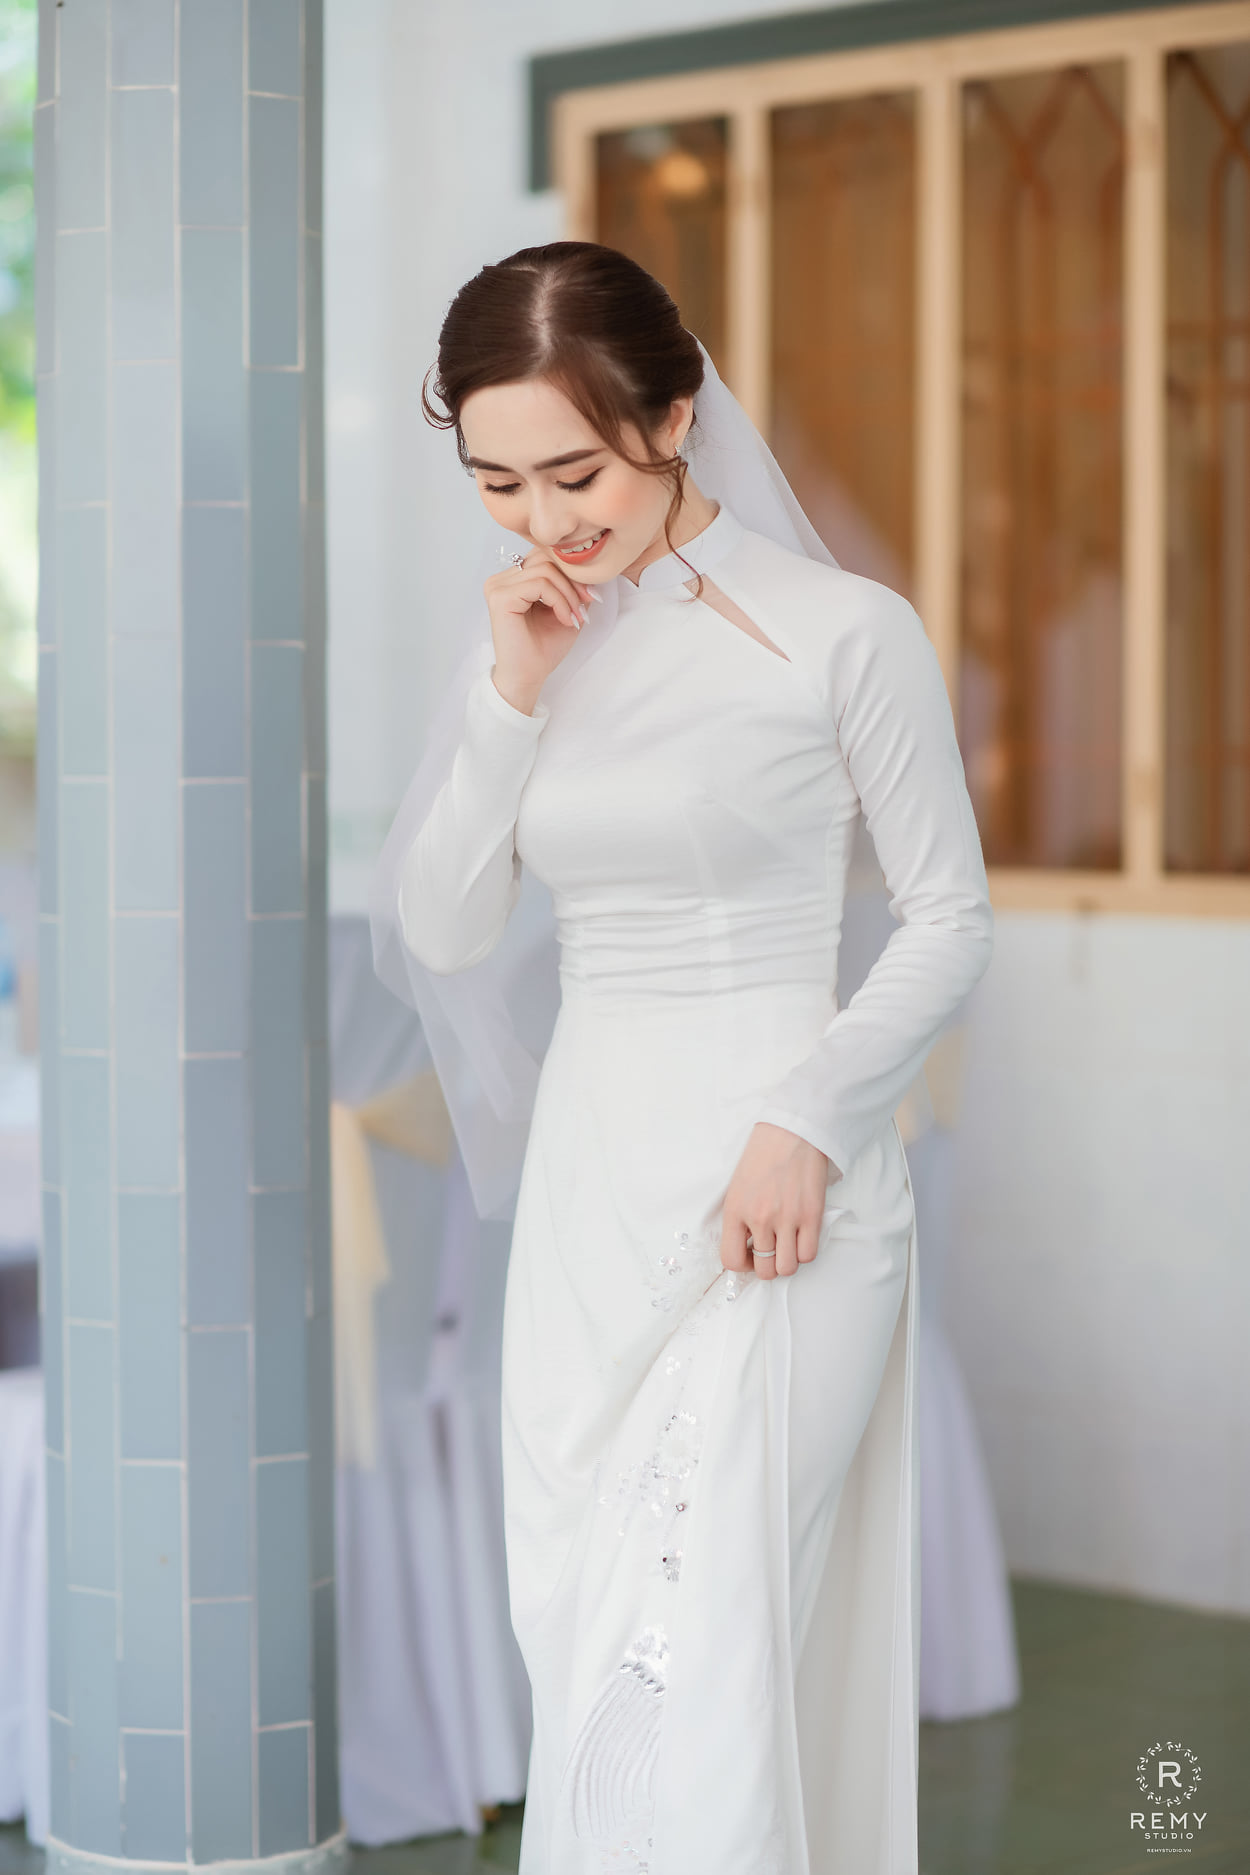 Kinh nghiệm thuê váy cưới đẹp ở Ninh Bình mà cô dâu nào cũng nên biết